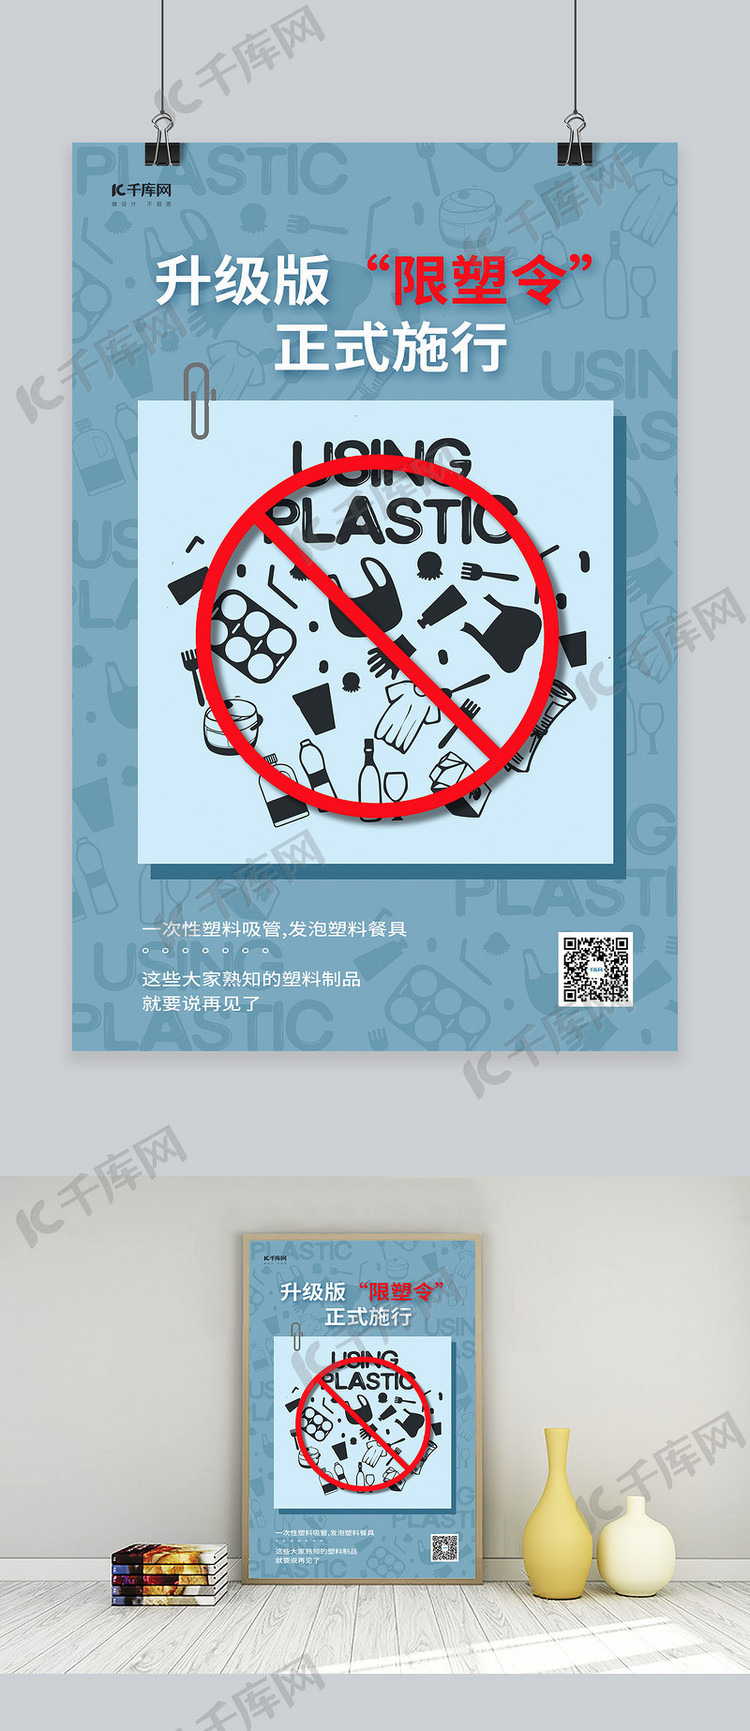 限塑令拒绝塑料抵制塑料 浅色系简约海报